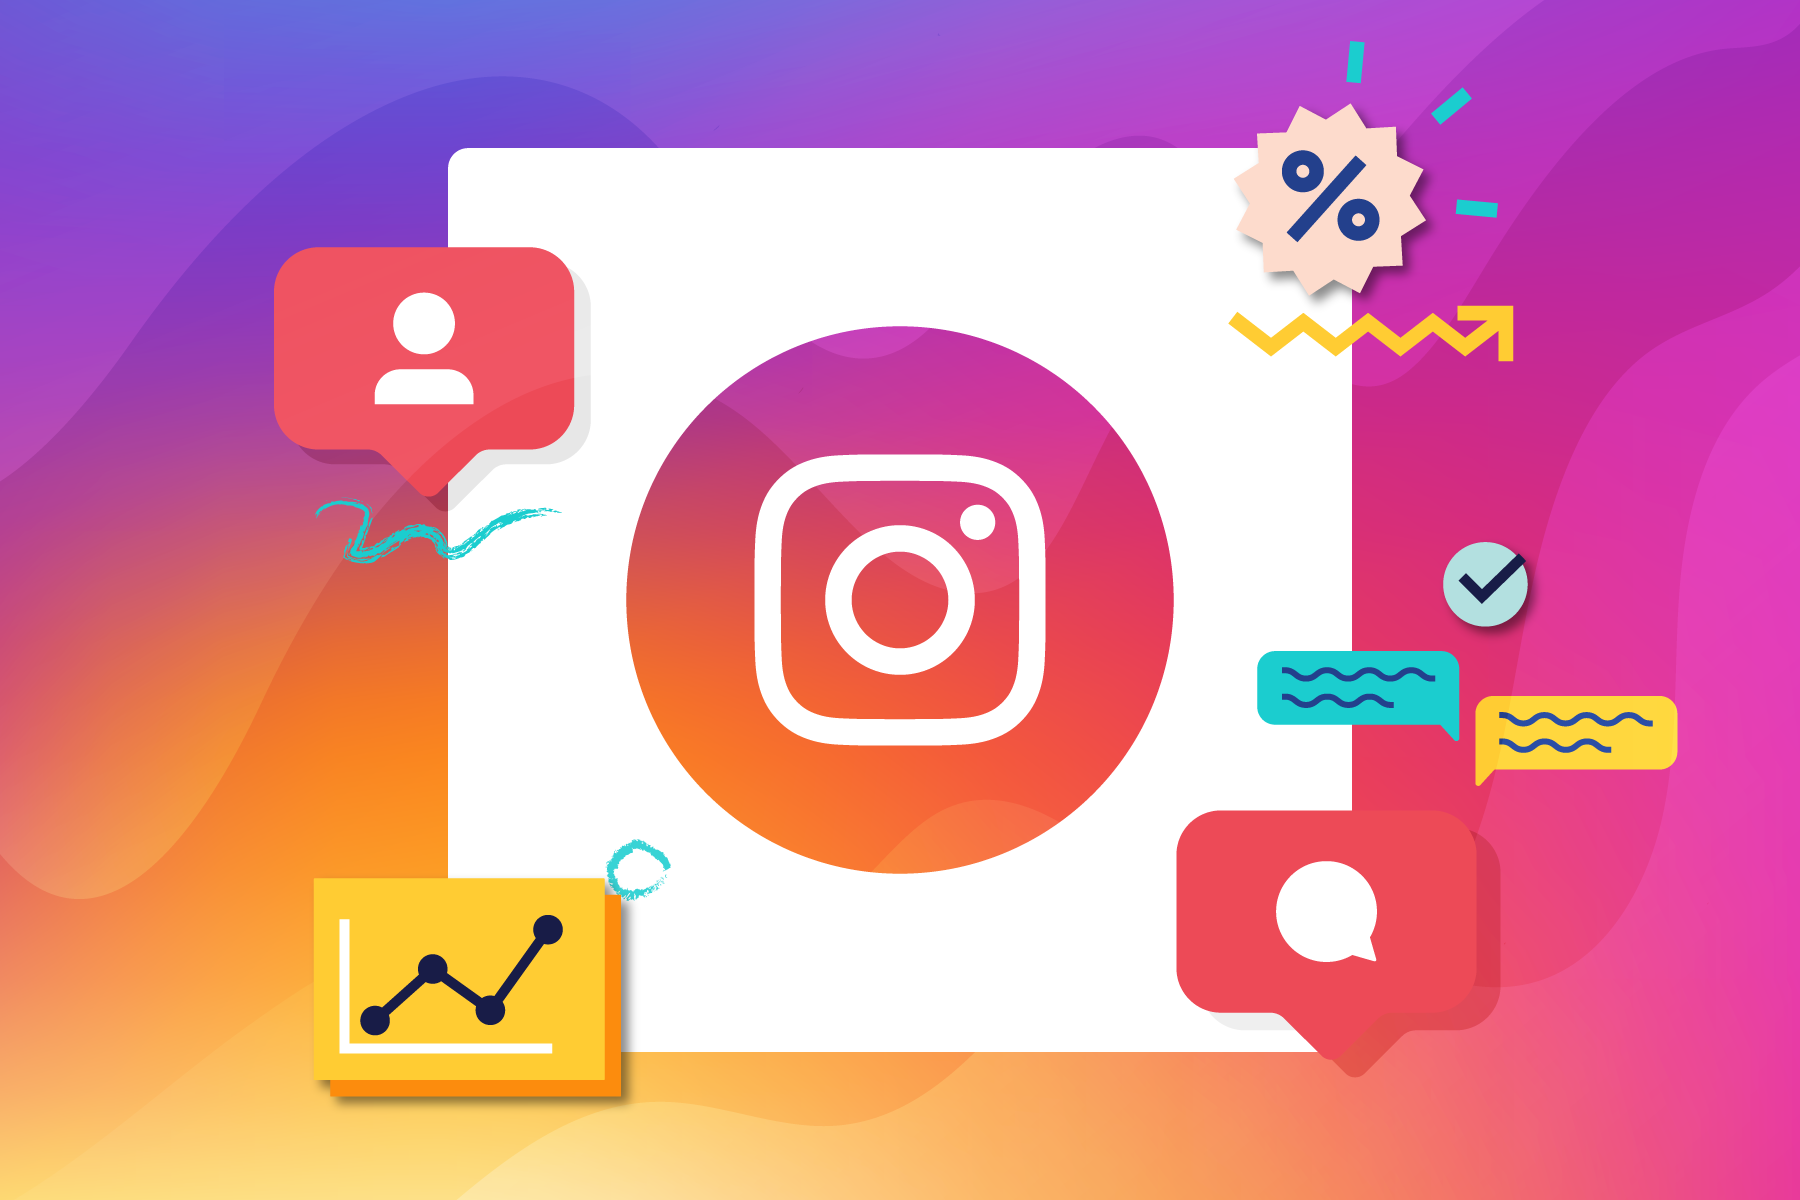 Instagram wirkungsvoll für das eigene Unternehmen nutzen – So gelingt es